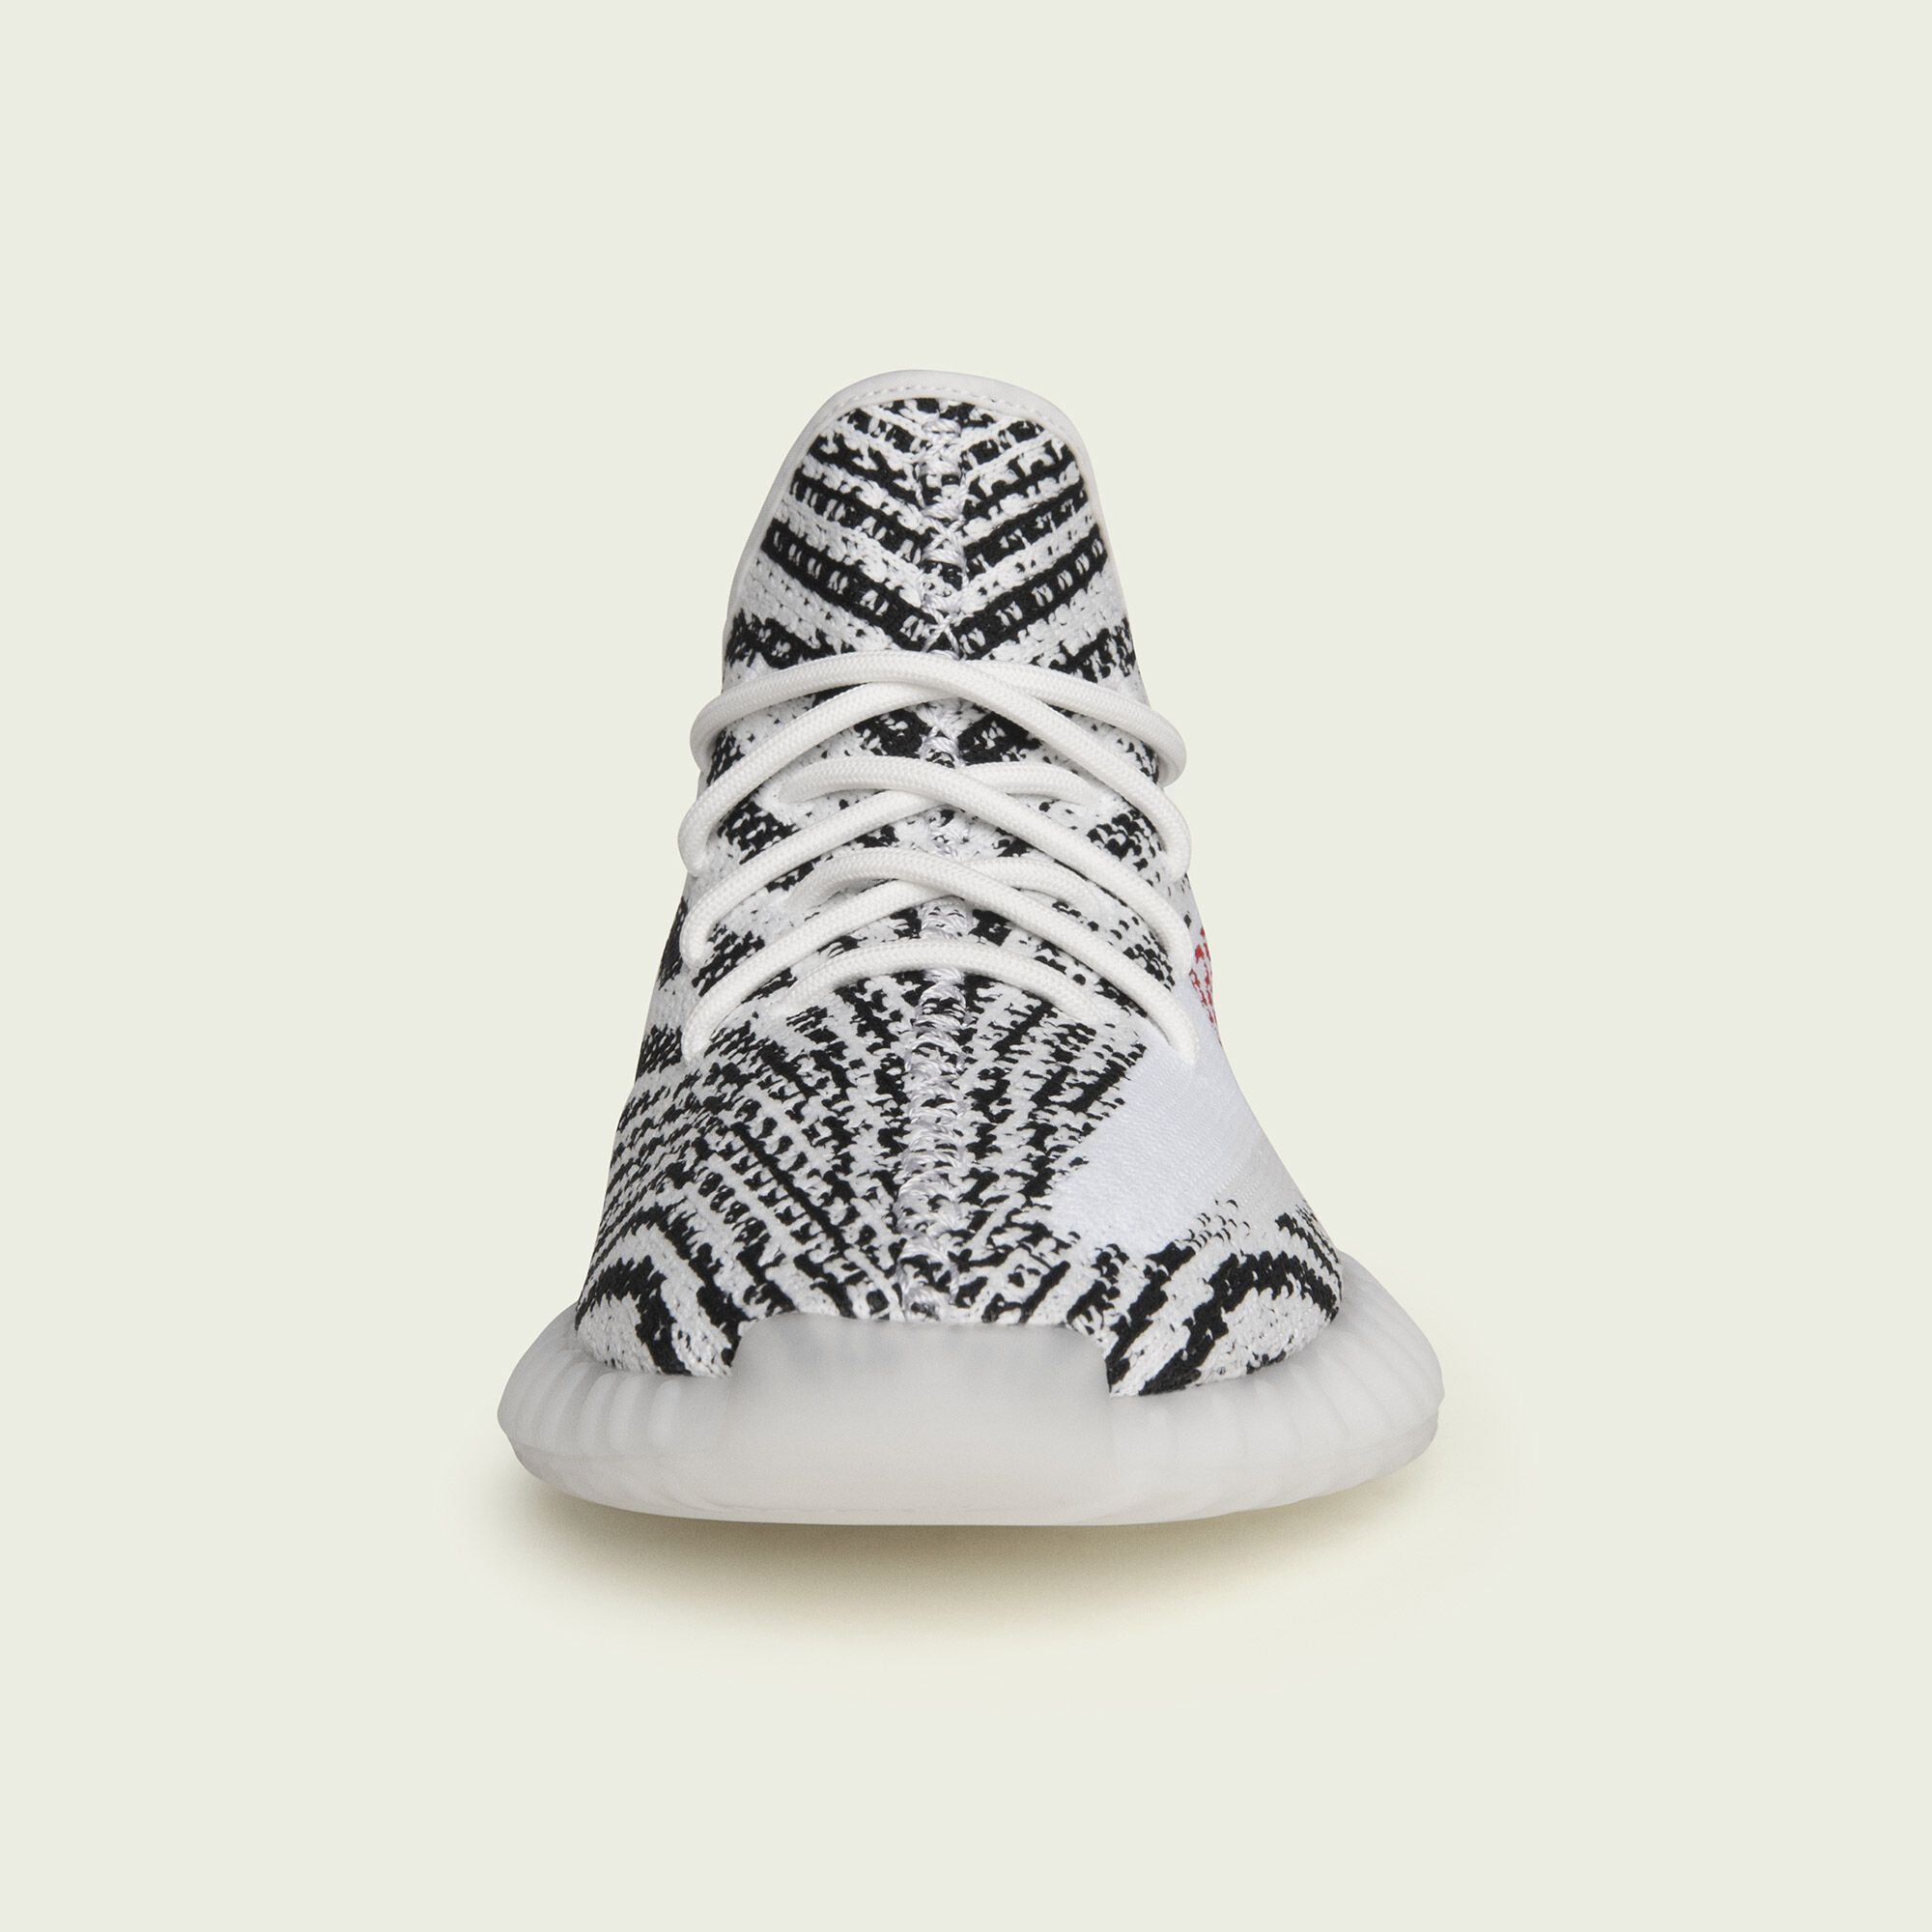  adidas YEEZY BOOST 350 V2 - Zebra 